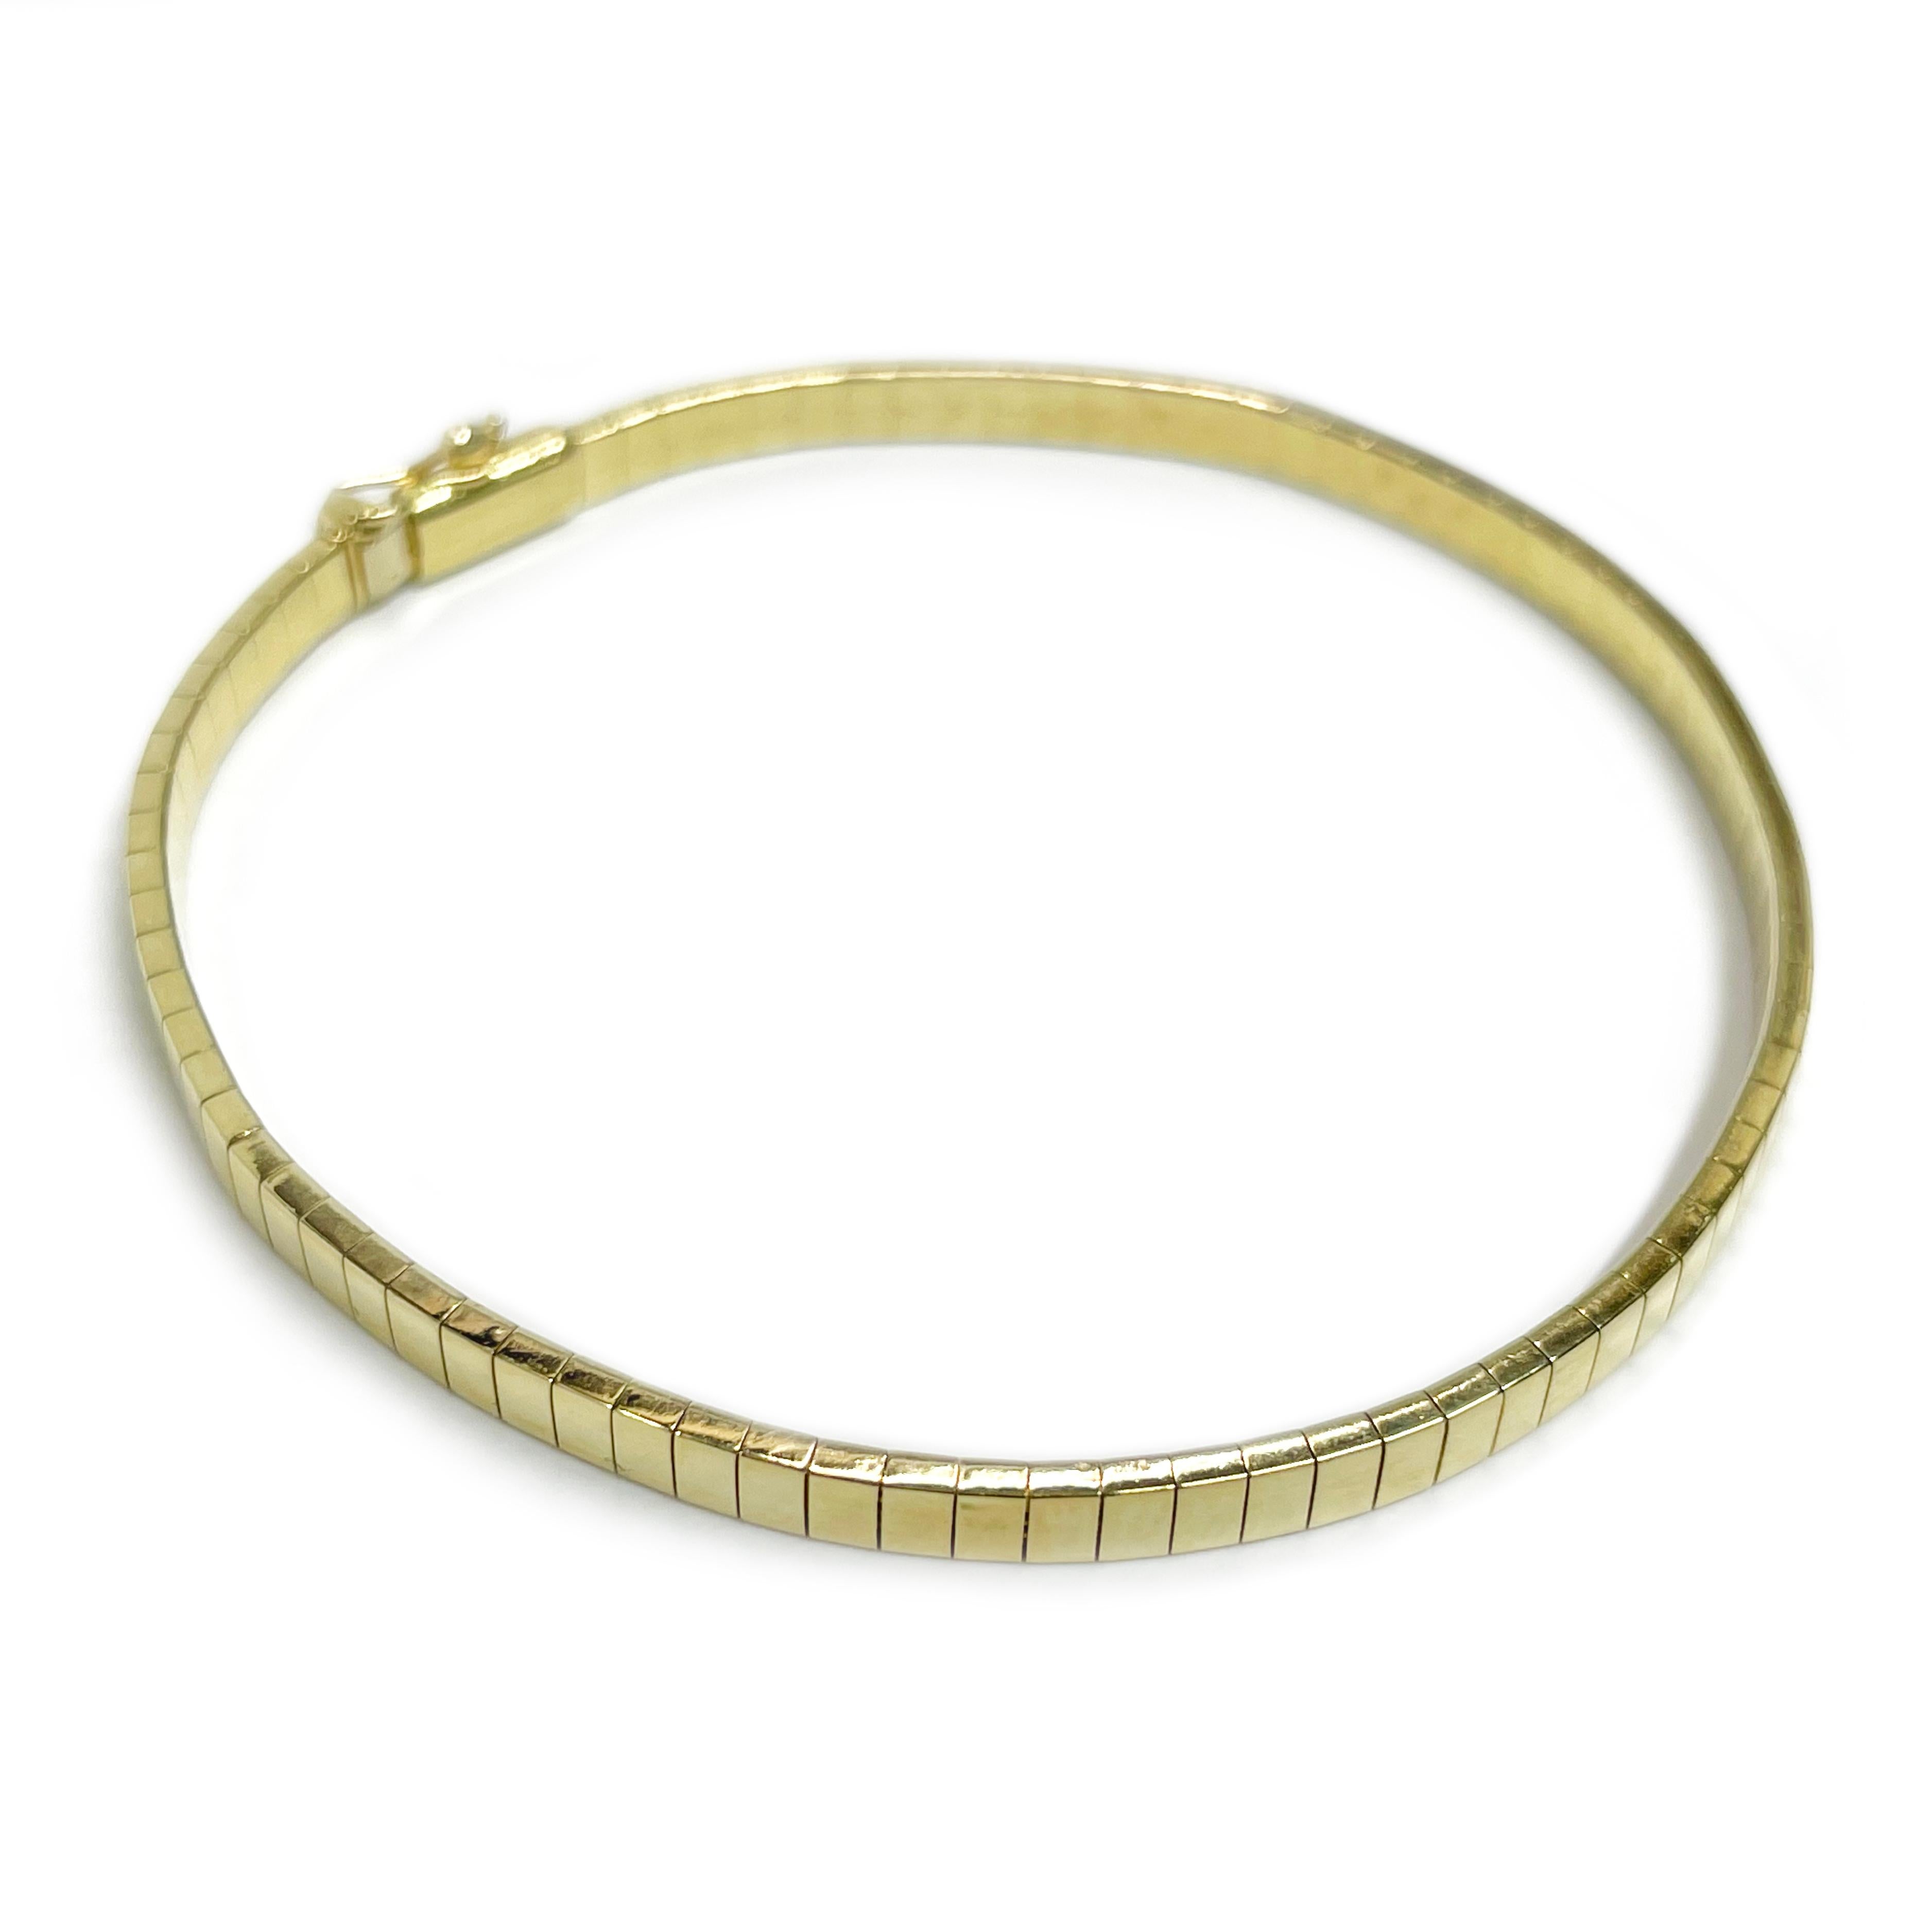 Bracelet Omega en or jaune 14 carats. Le bracelet a une finition lisse et brillante. Le bracelet mesure 3,5 mm de large et 7 pouces de long. Il est doté d'une fermeture en boîte et d'un huit de sécurité. L'inscription 14K ITALY est estampillée sur